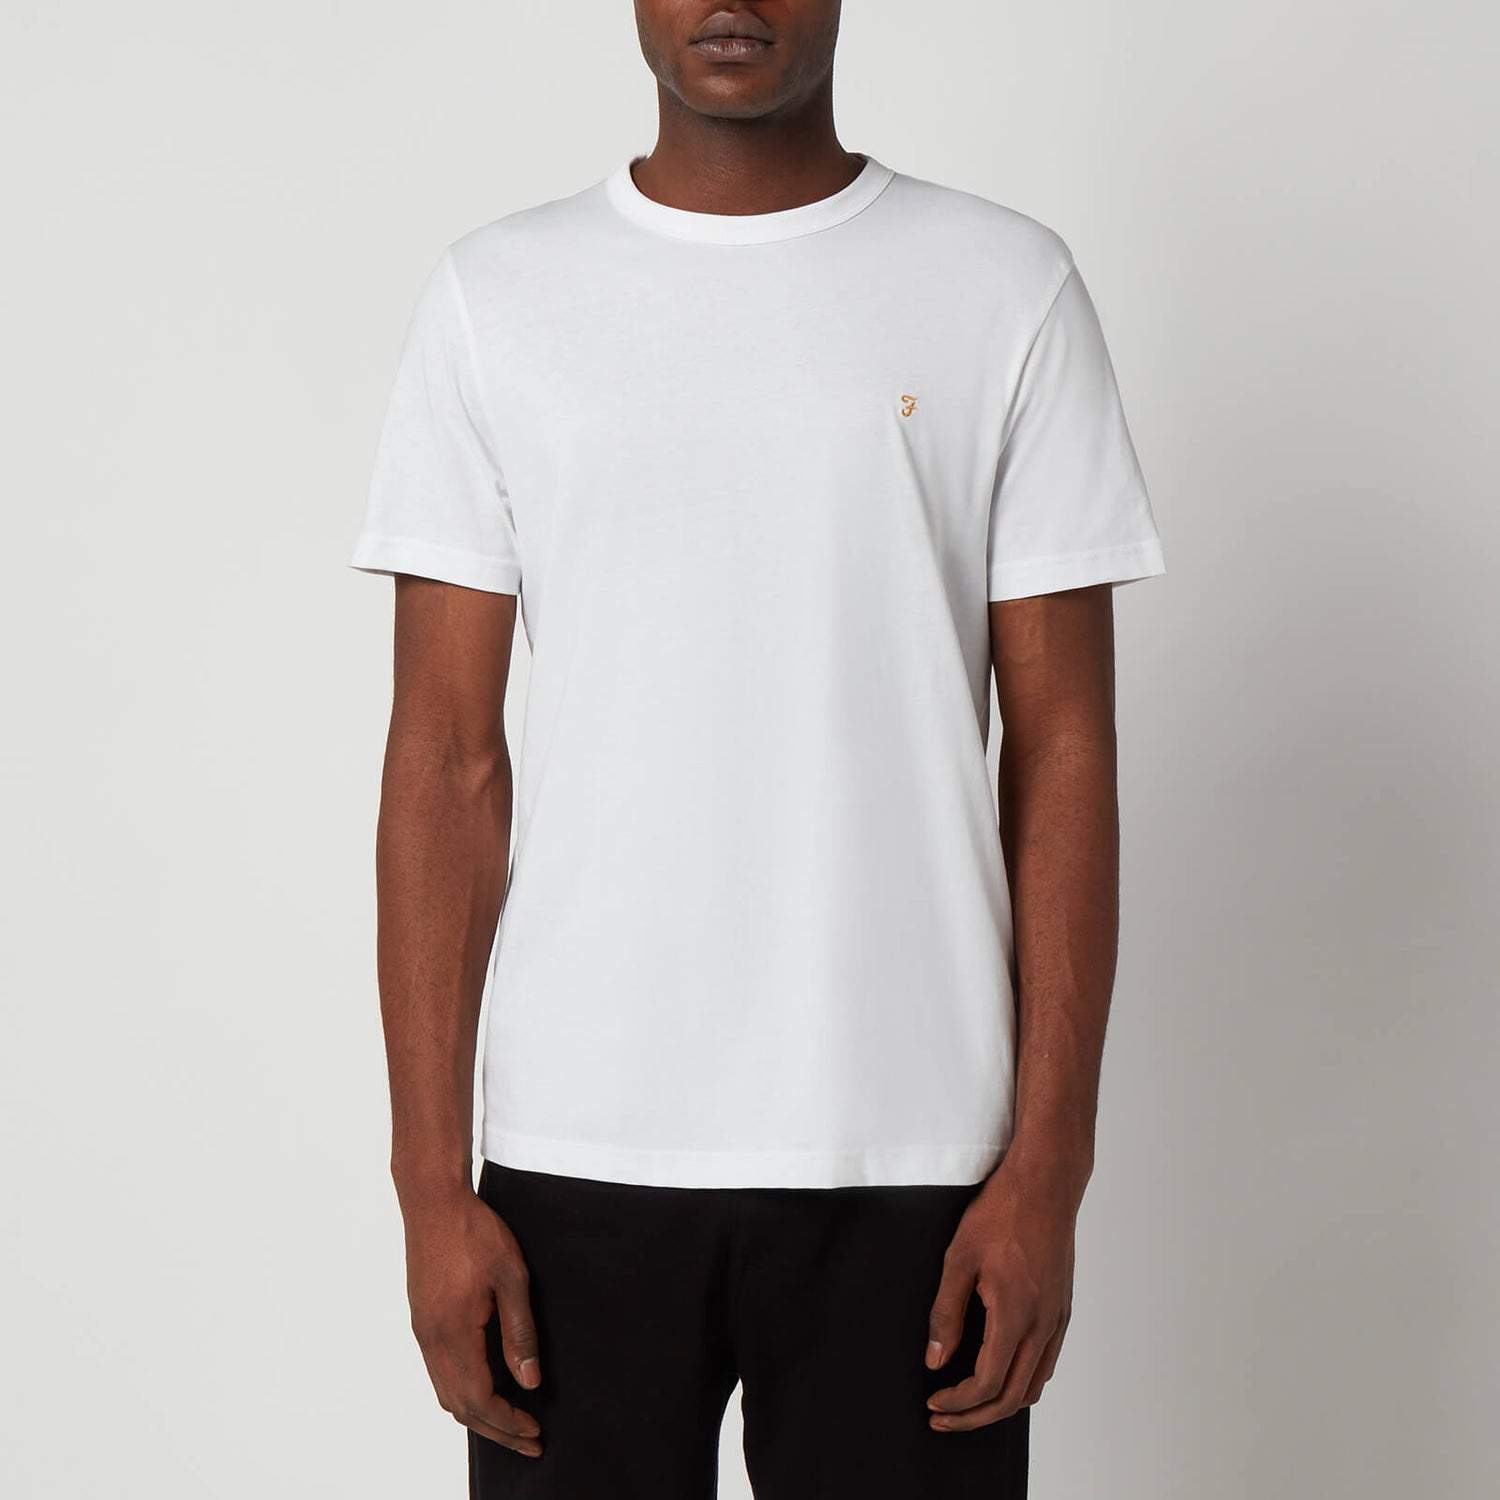 Farah Men's Danny T-Shirt - White - S